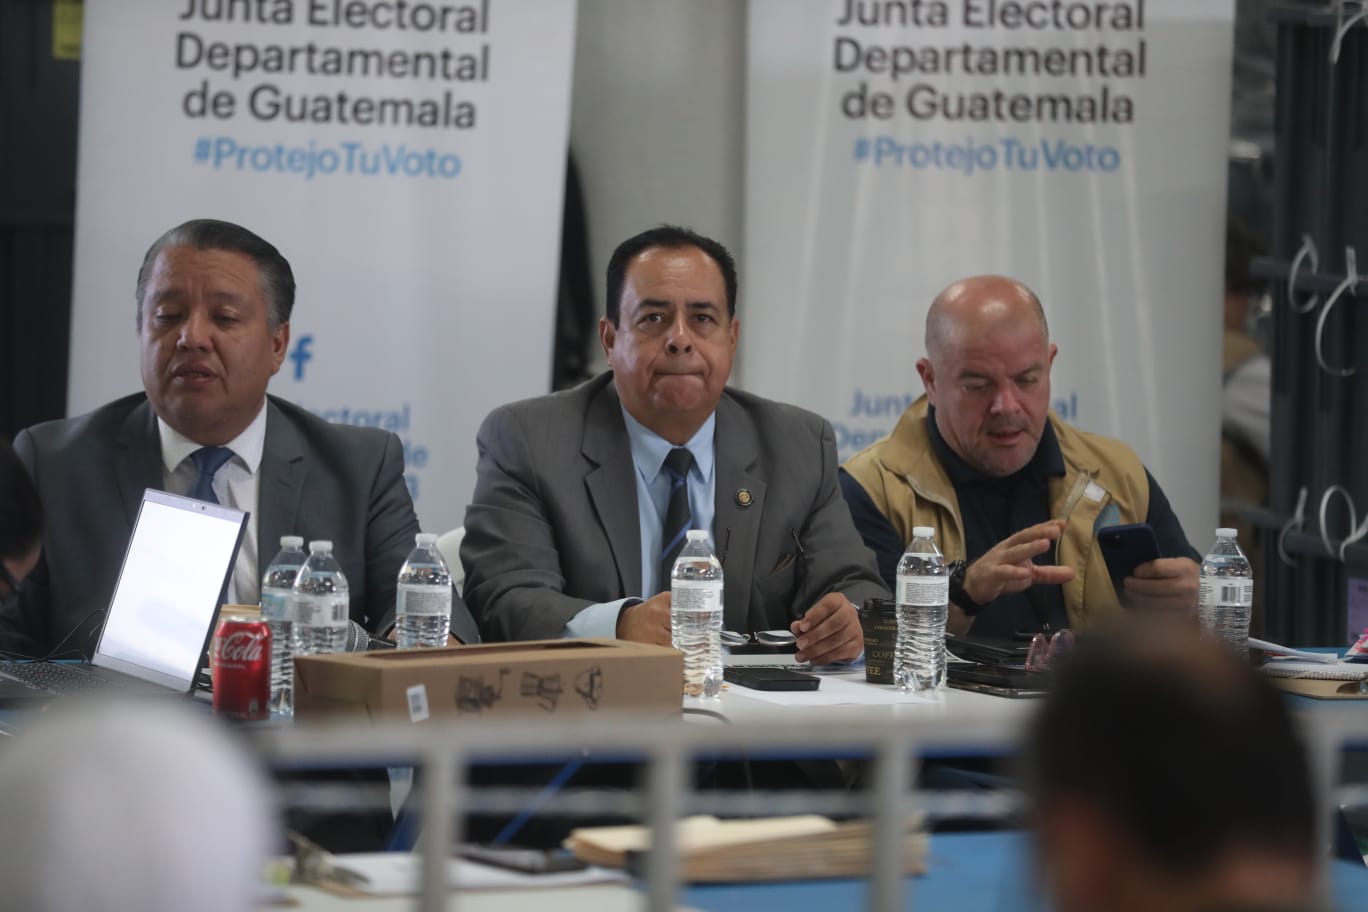 El cotejo de actas por parte de la JED del departamento de Guatemala concluyó este jueves 6 de julio. (Foto Prensa Libre: Juan Diego González)

